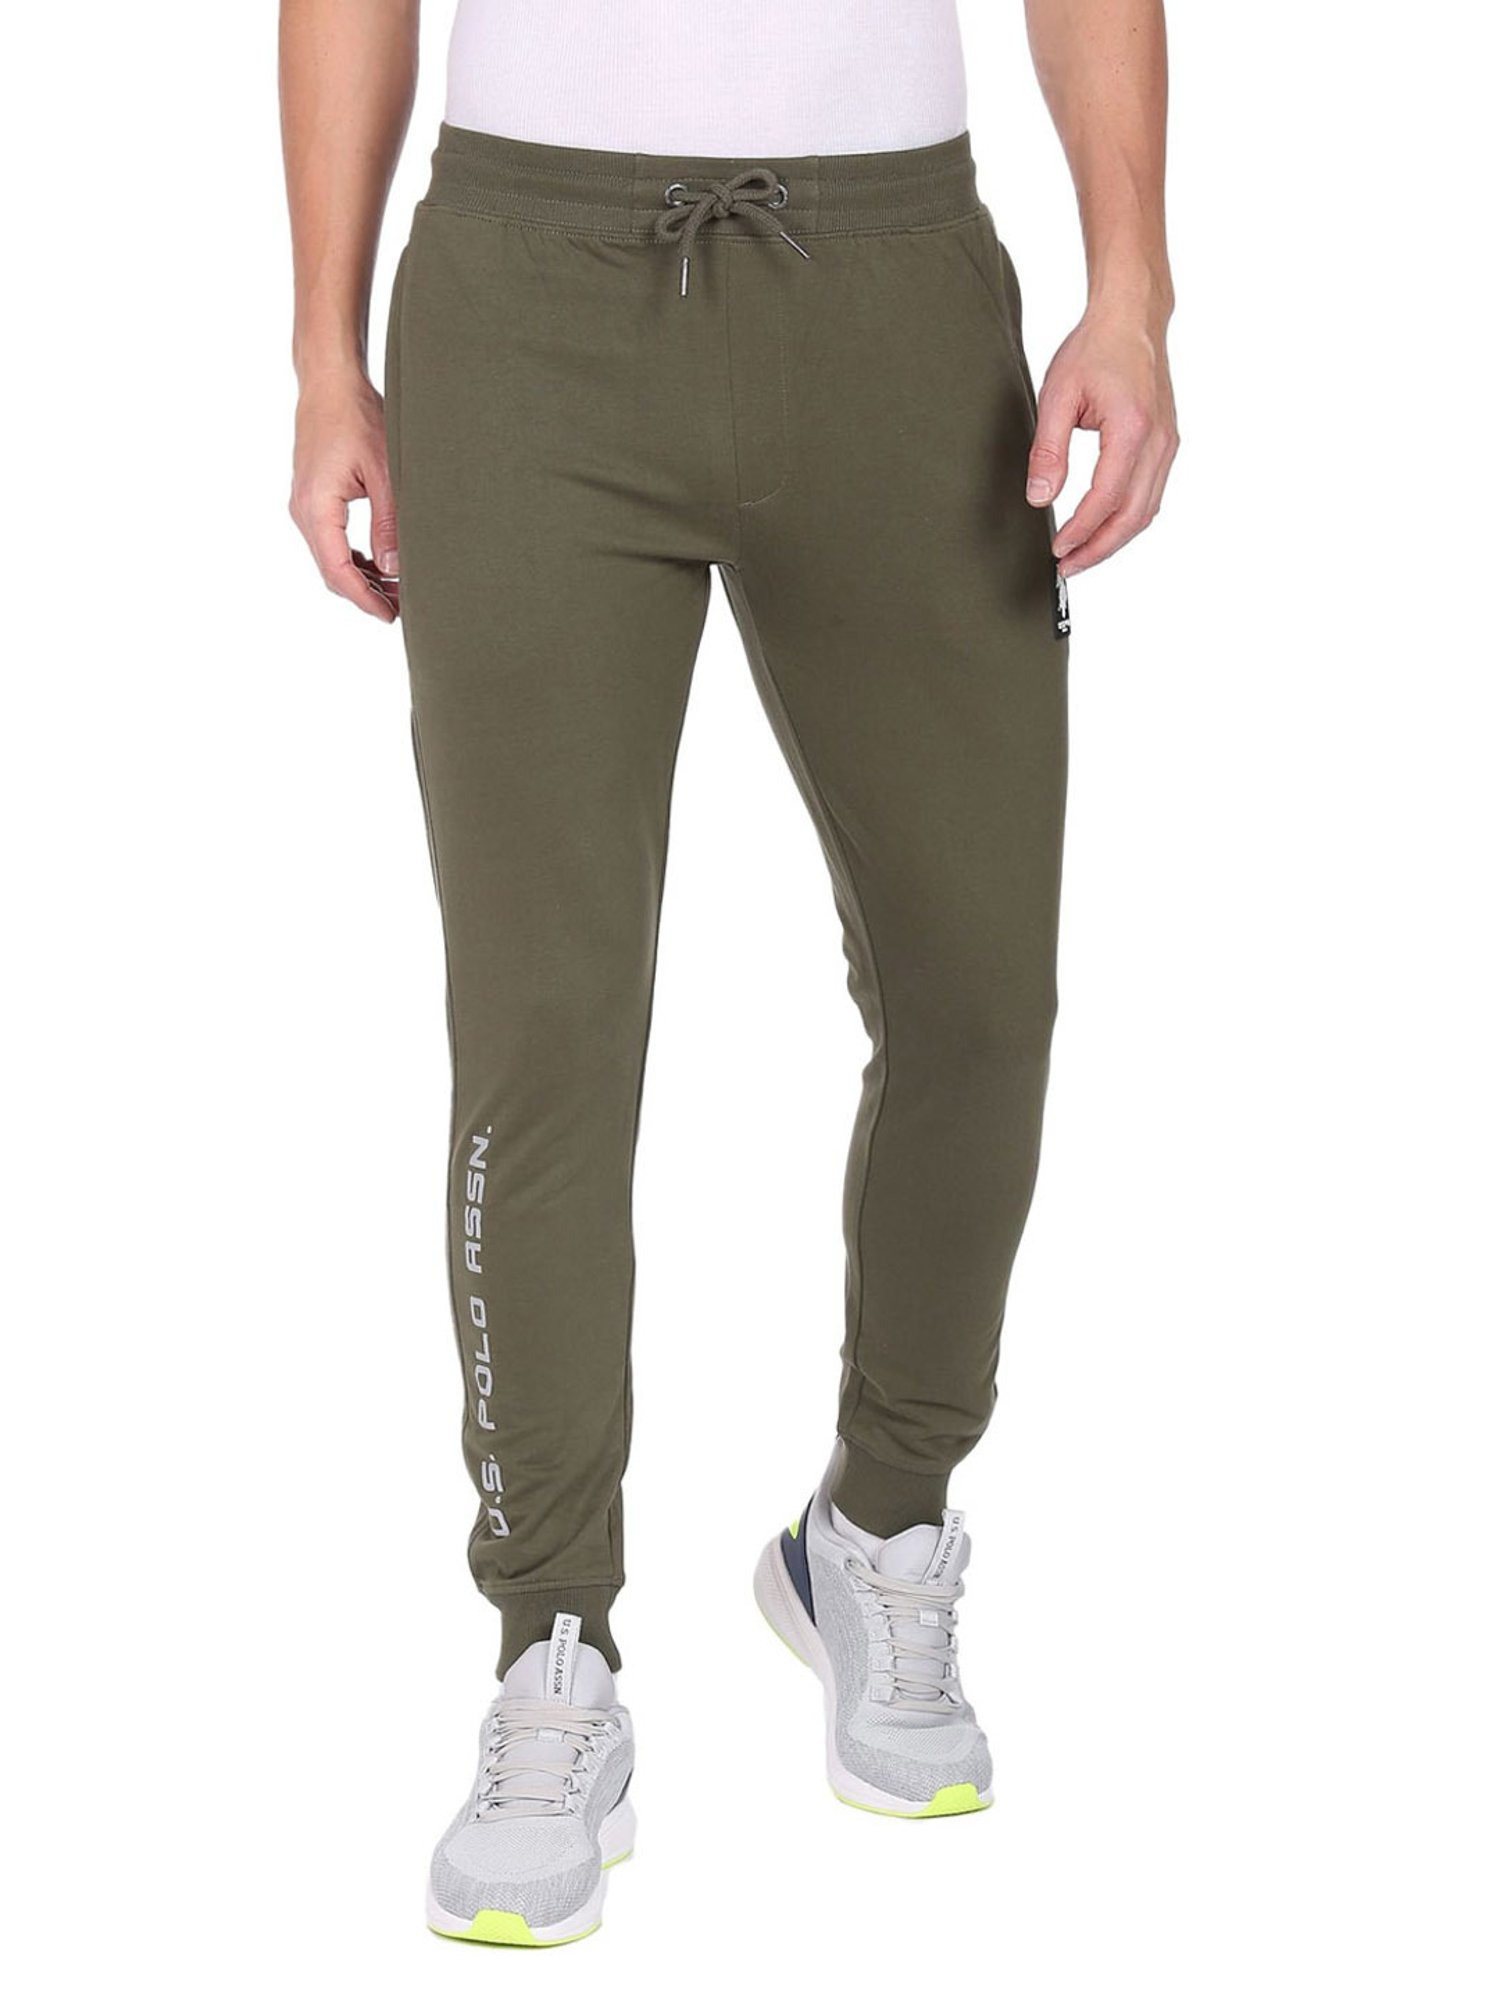 Buy IVOC Green Regular Fit Cotton Jogger Pants for Men's Online @ Tata CLiQ